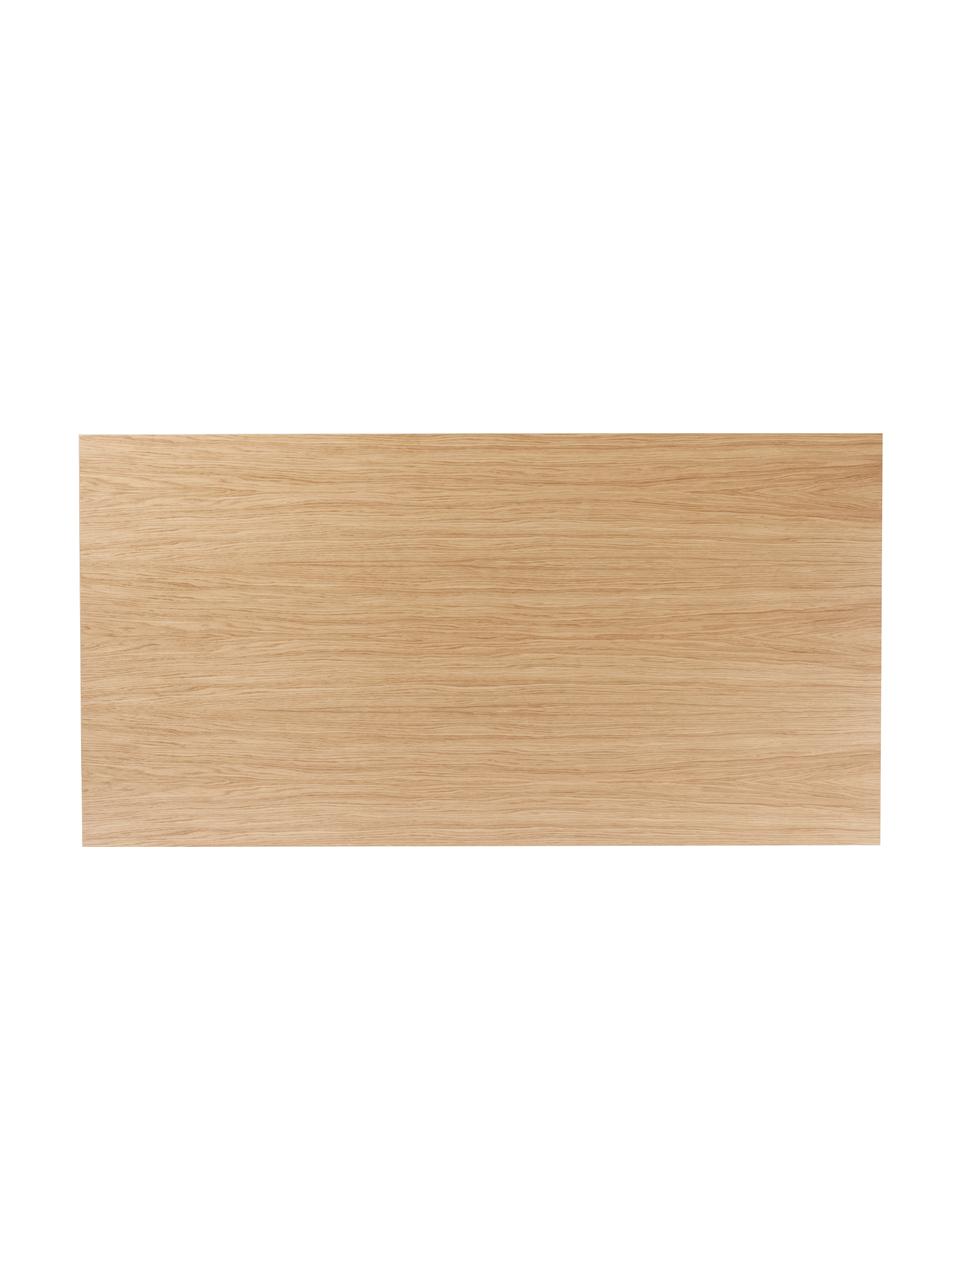 Hell gebeizter Esstisch Androgyne, verschiedene Größen, Mitteldichte Holzfaserplatte (MDF) mit Eichenholzfurnier, Holz, hell gebeizt, B 210 x T 100 cm